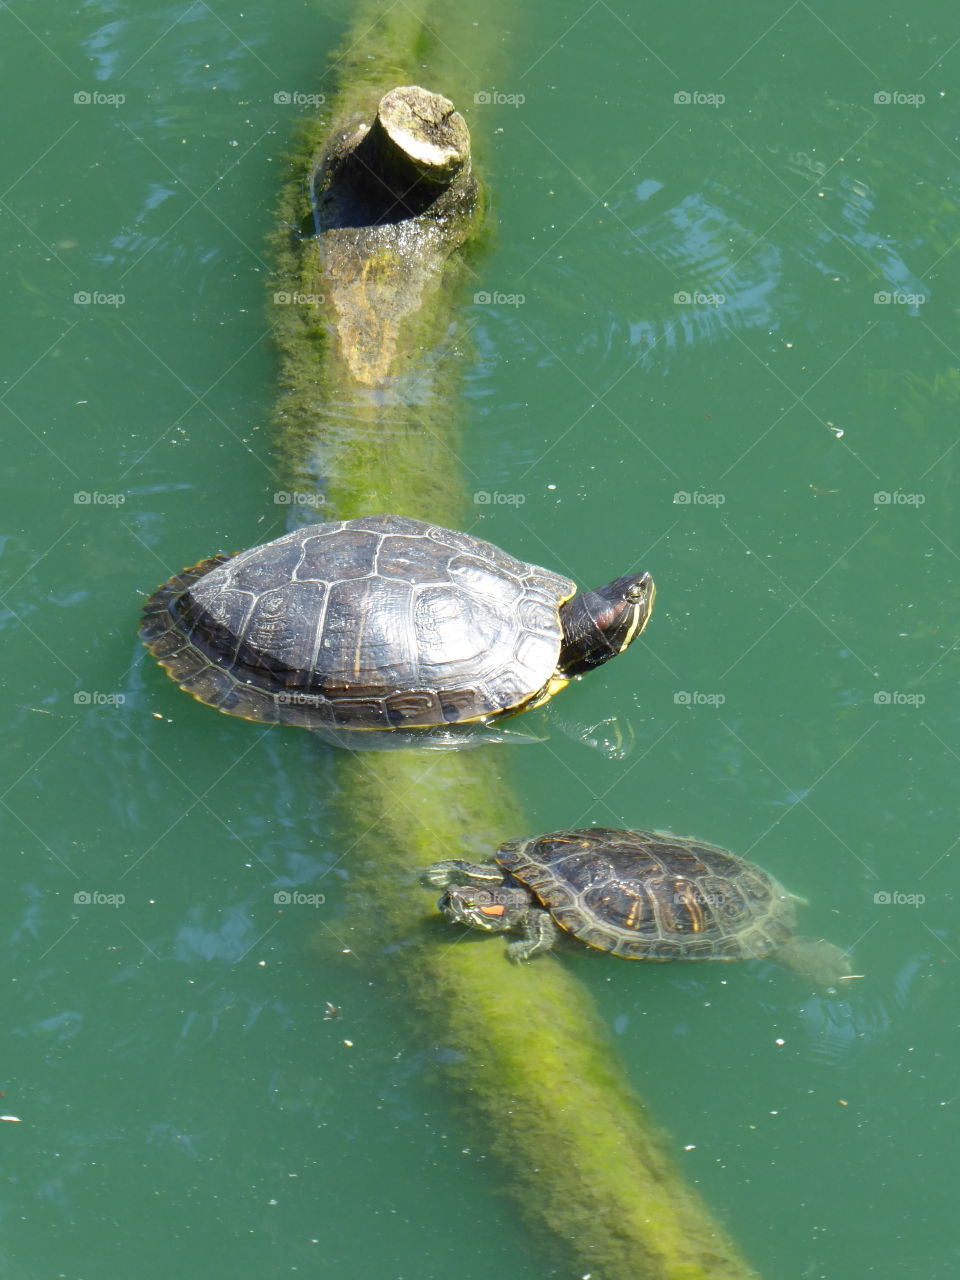 Swimming tortoise